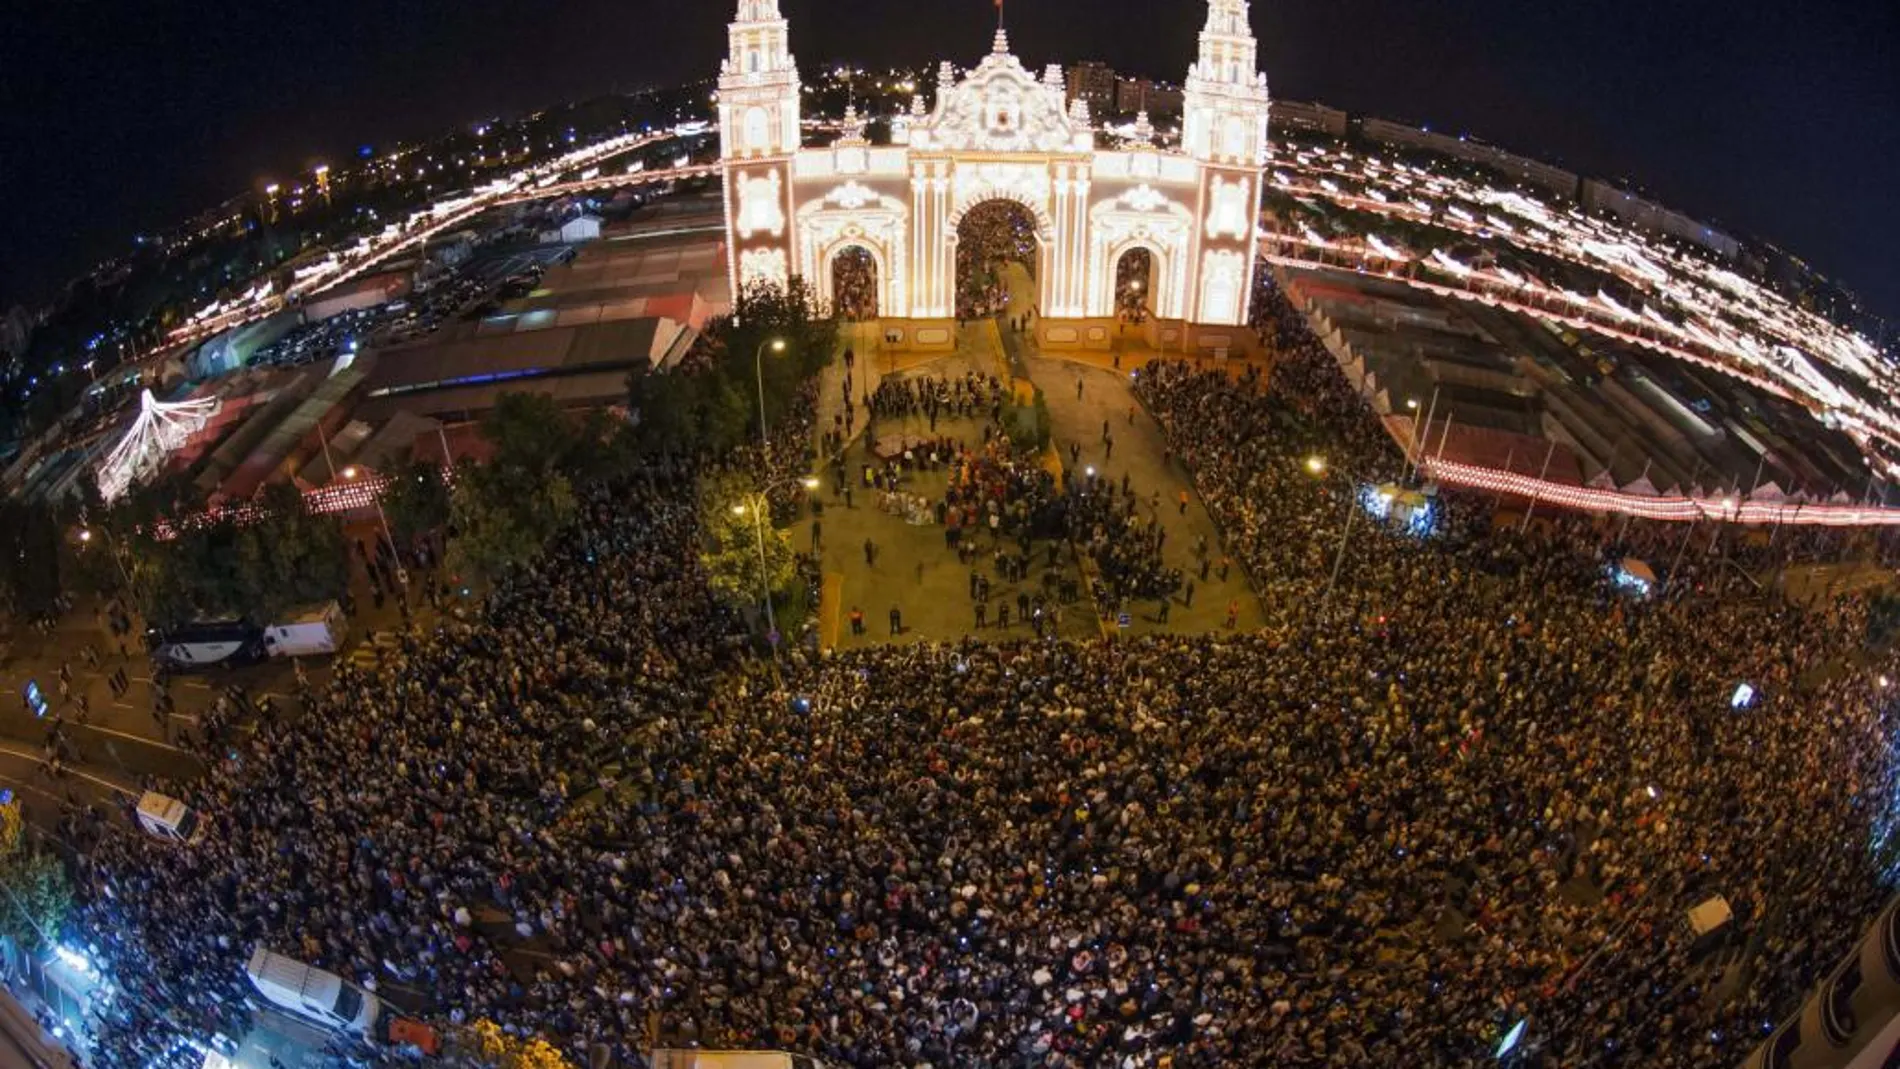 La Feria de Abril de Sevilla